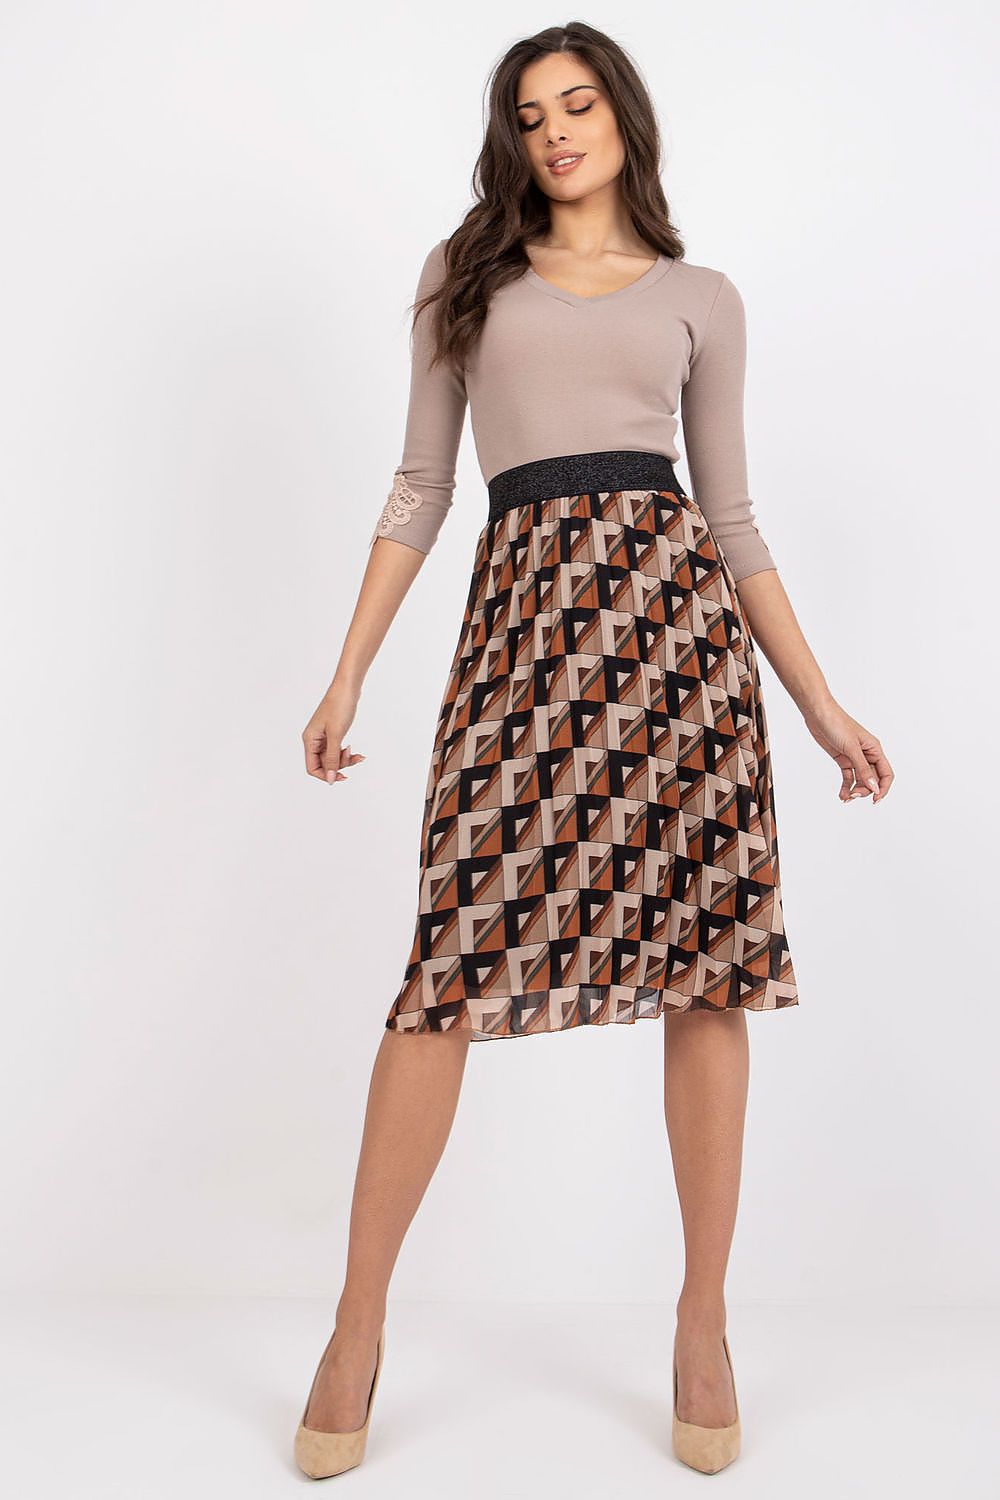 Skirt model 169545 Italy Moda Skirts Wholesale Clothing Matterhorn